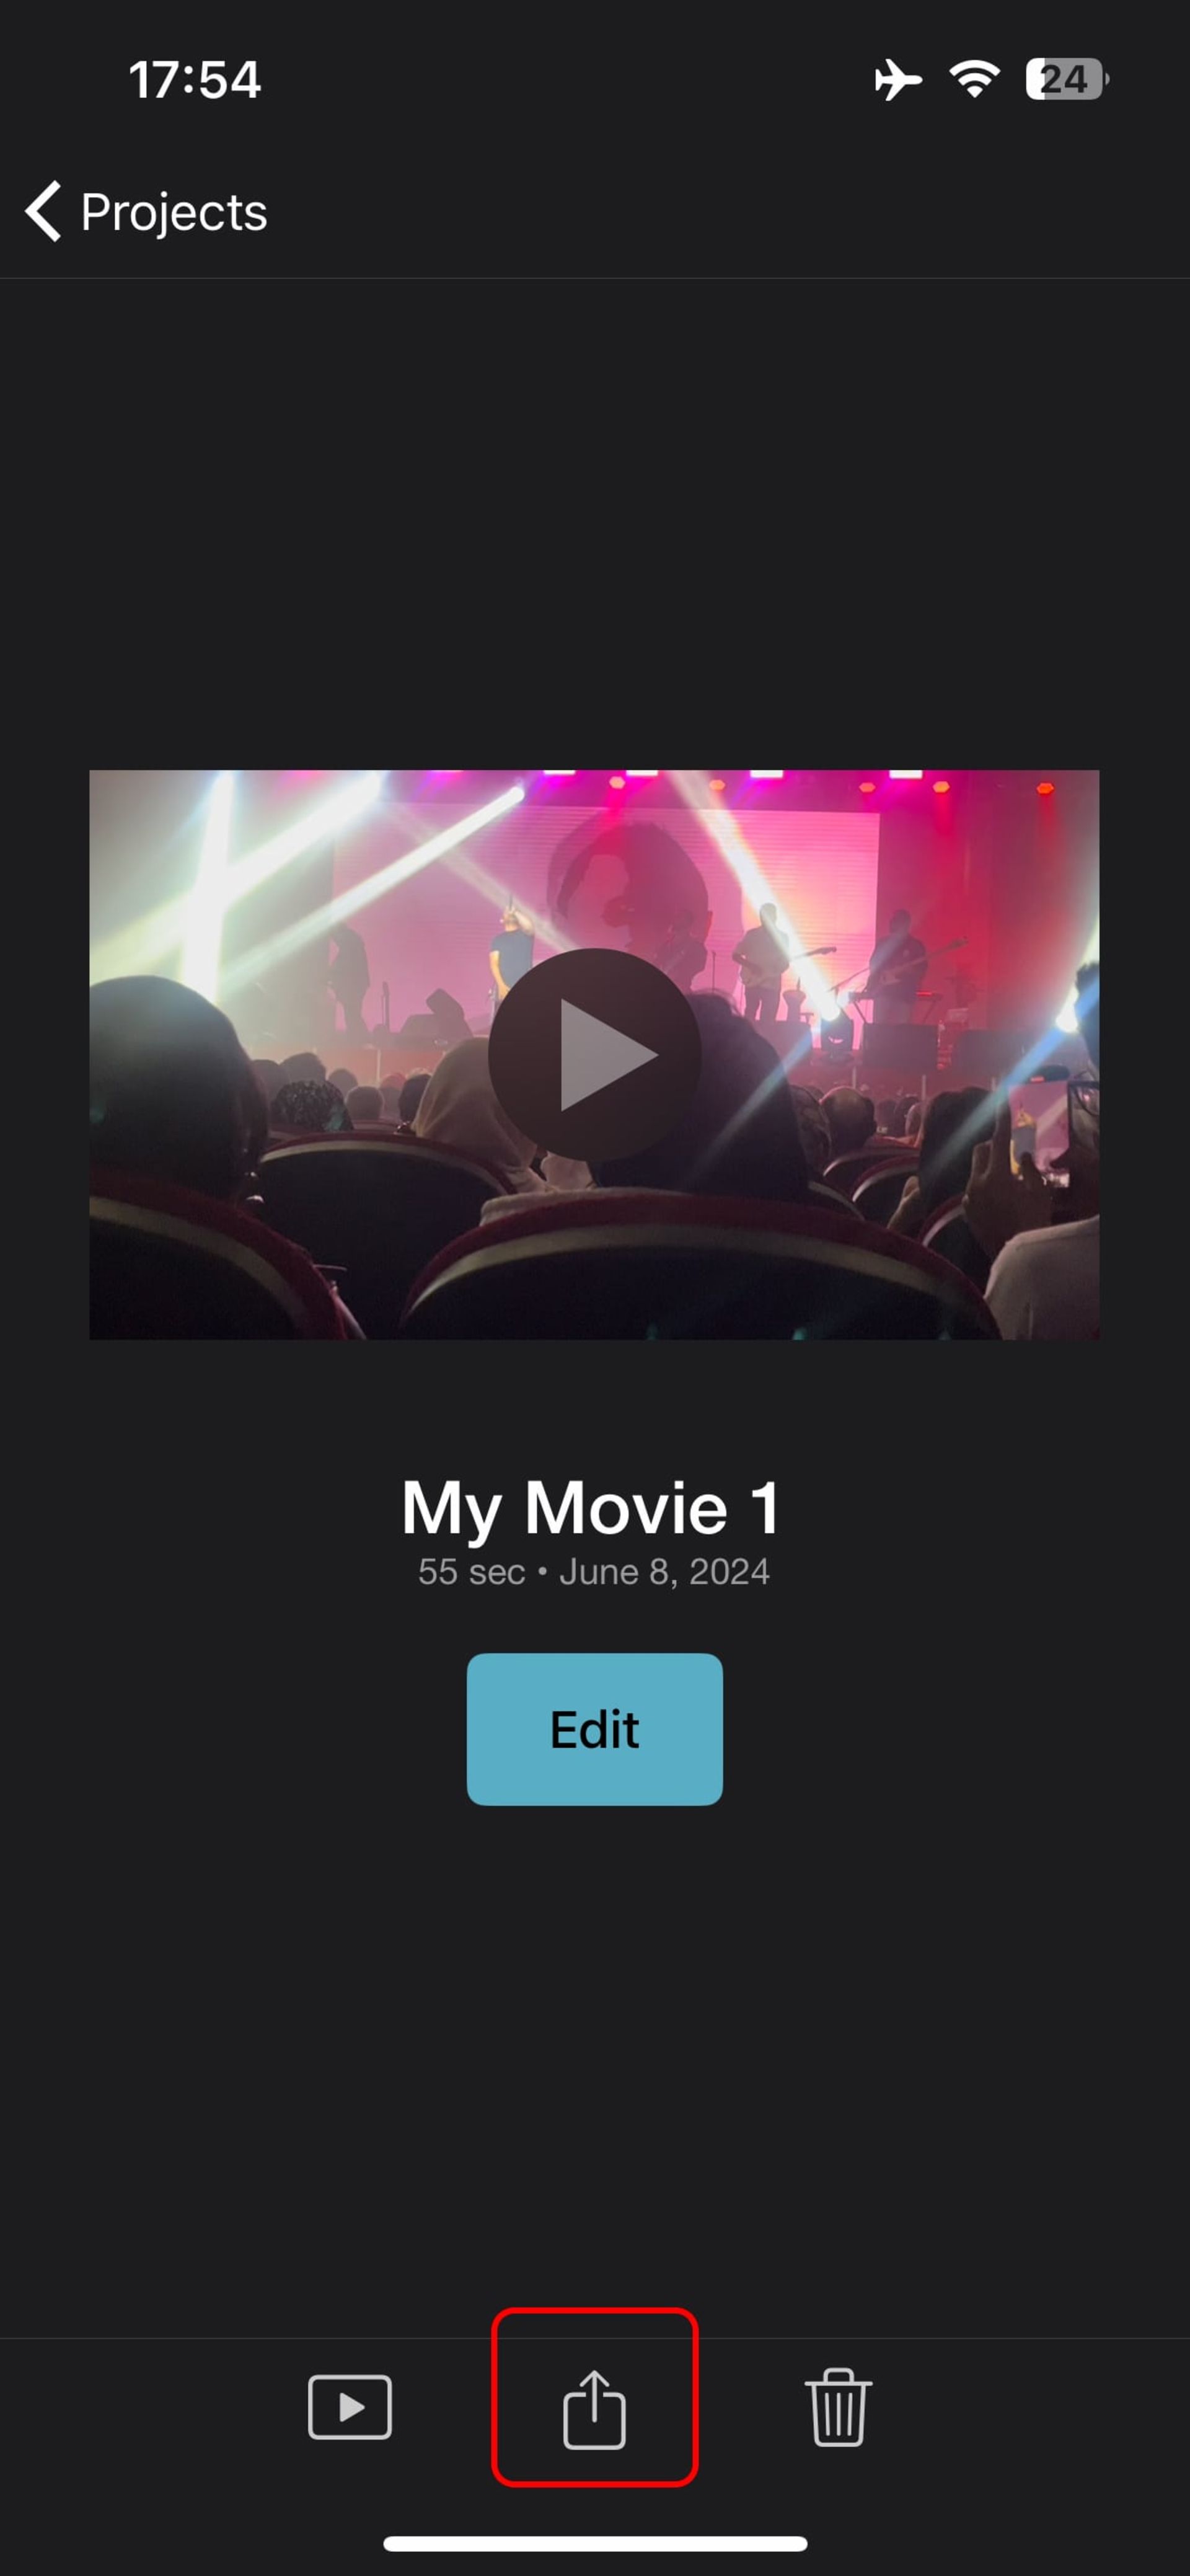 نمایی از اپلیکیشن iMovie برای افزایش سرعت ویدیو در آیفون